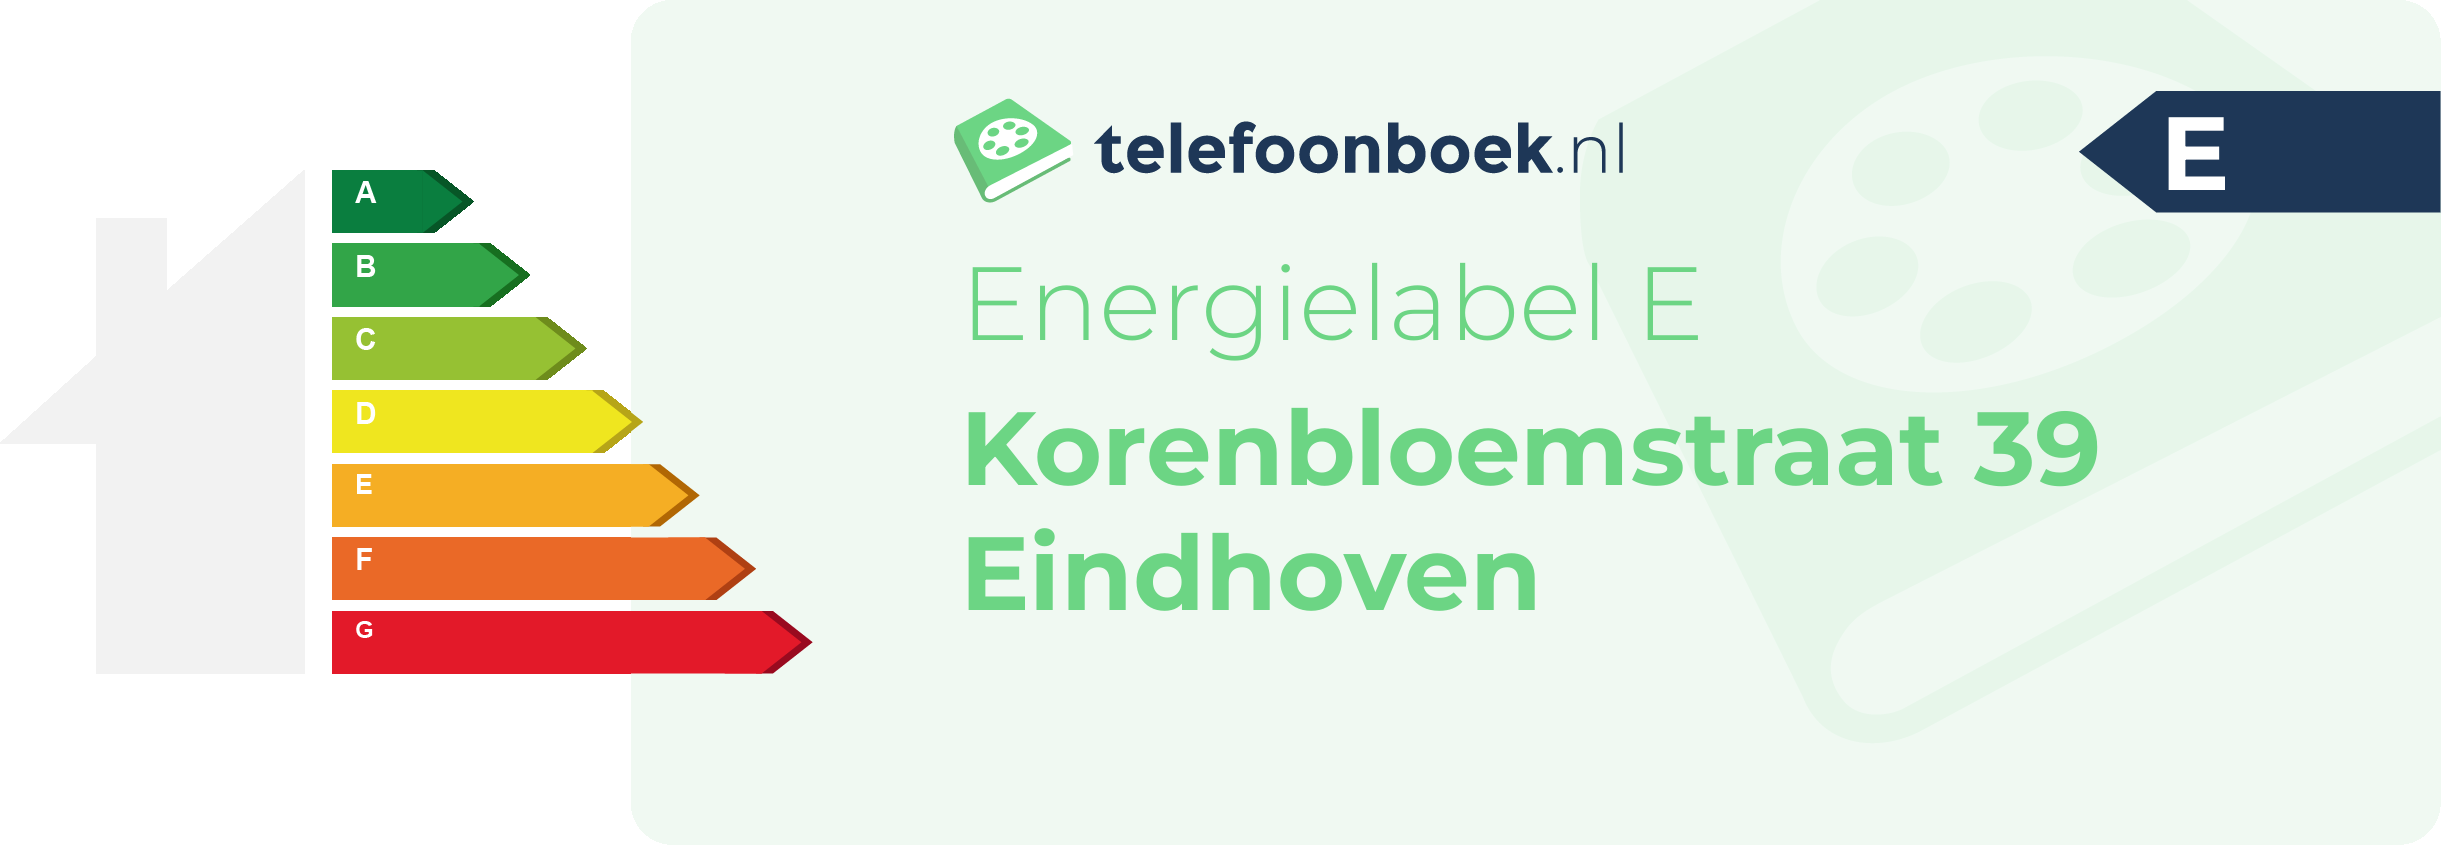 Energielabel Korenbloemstraat 39 Eindhoven